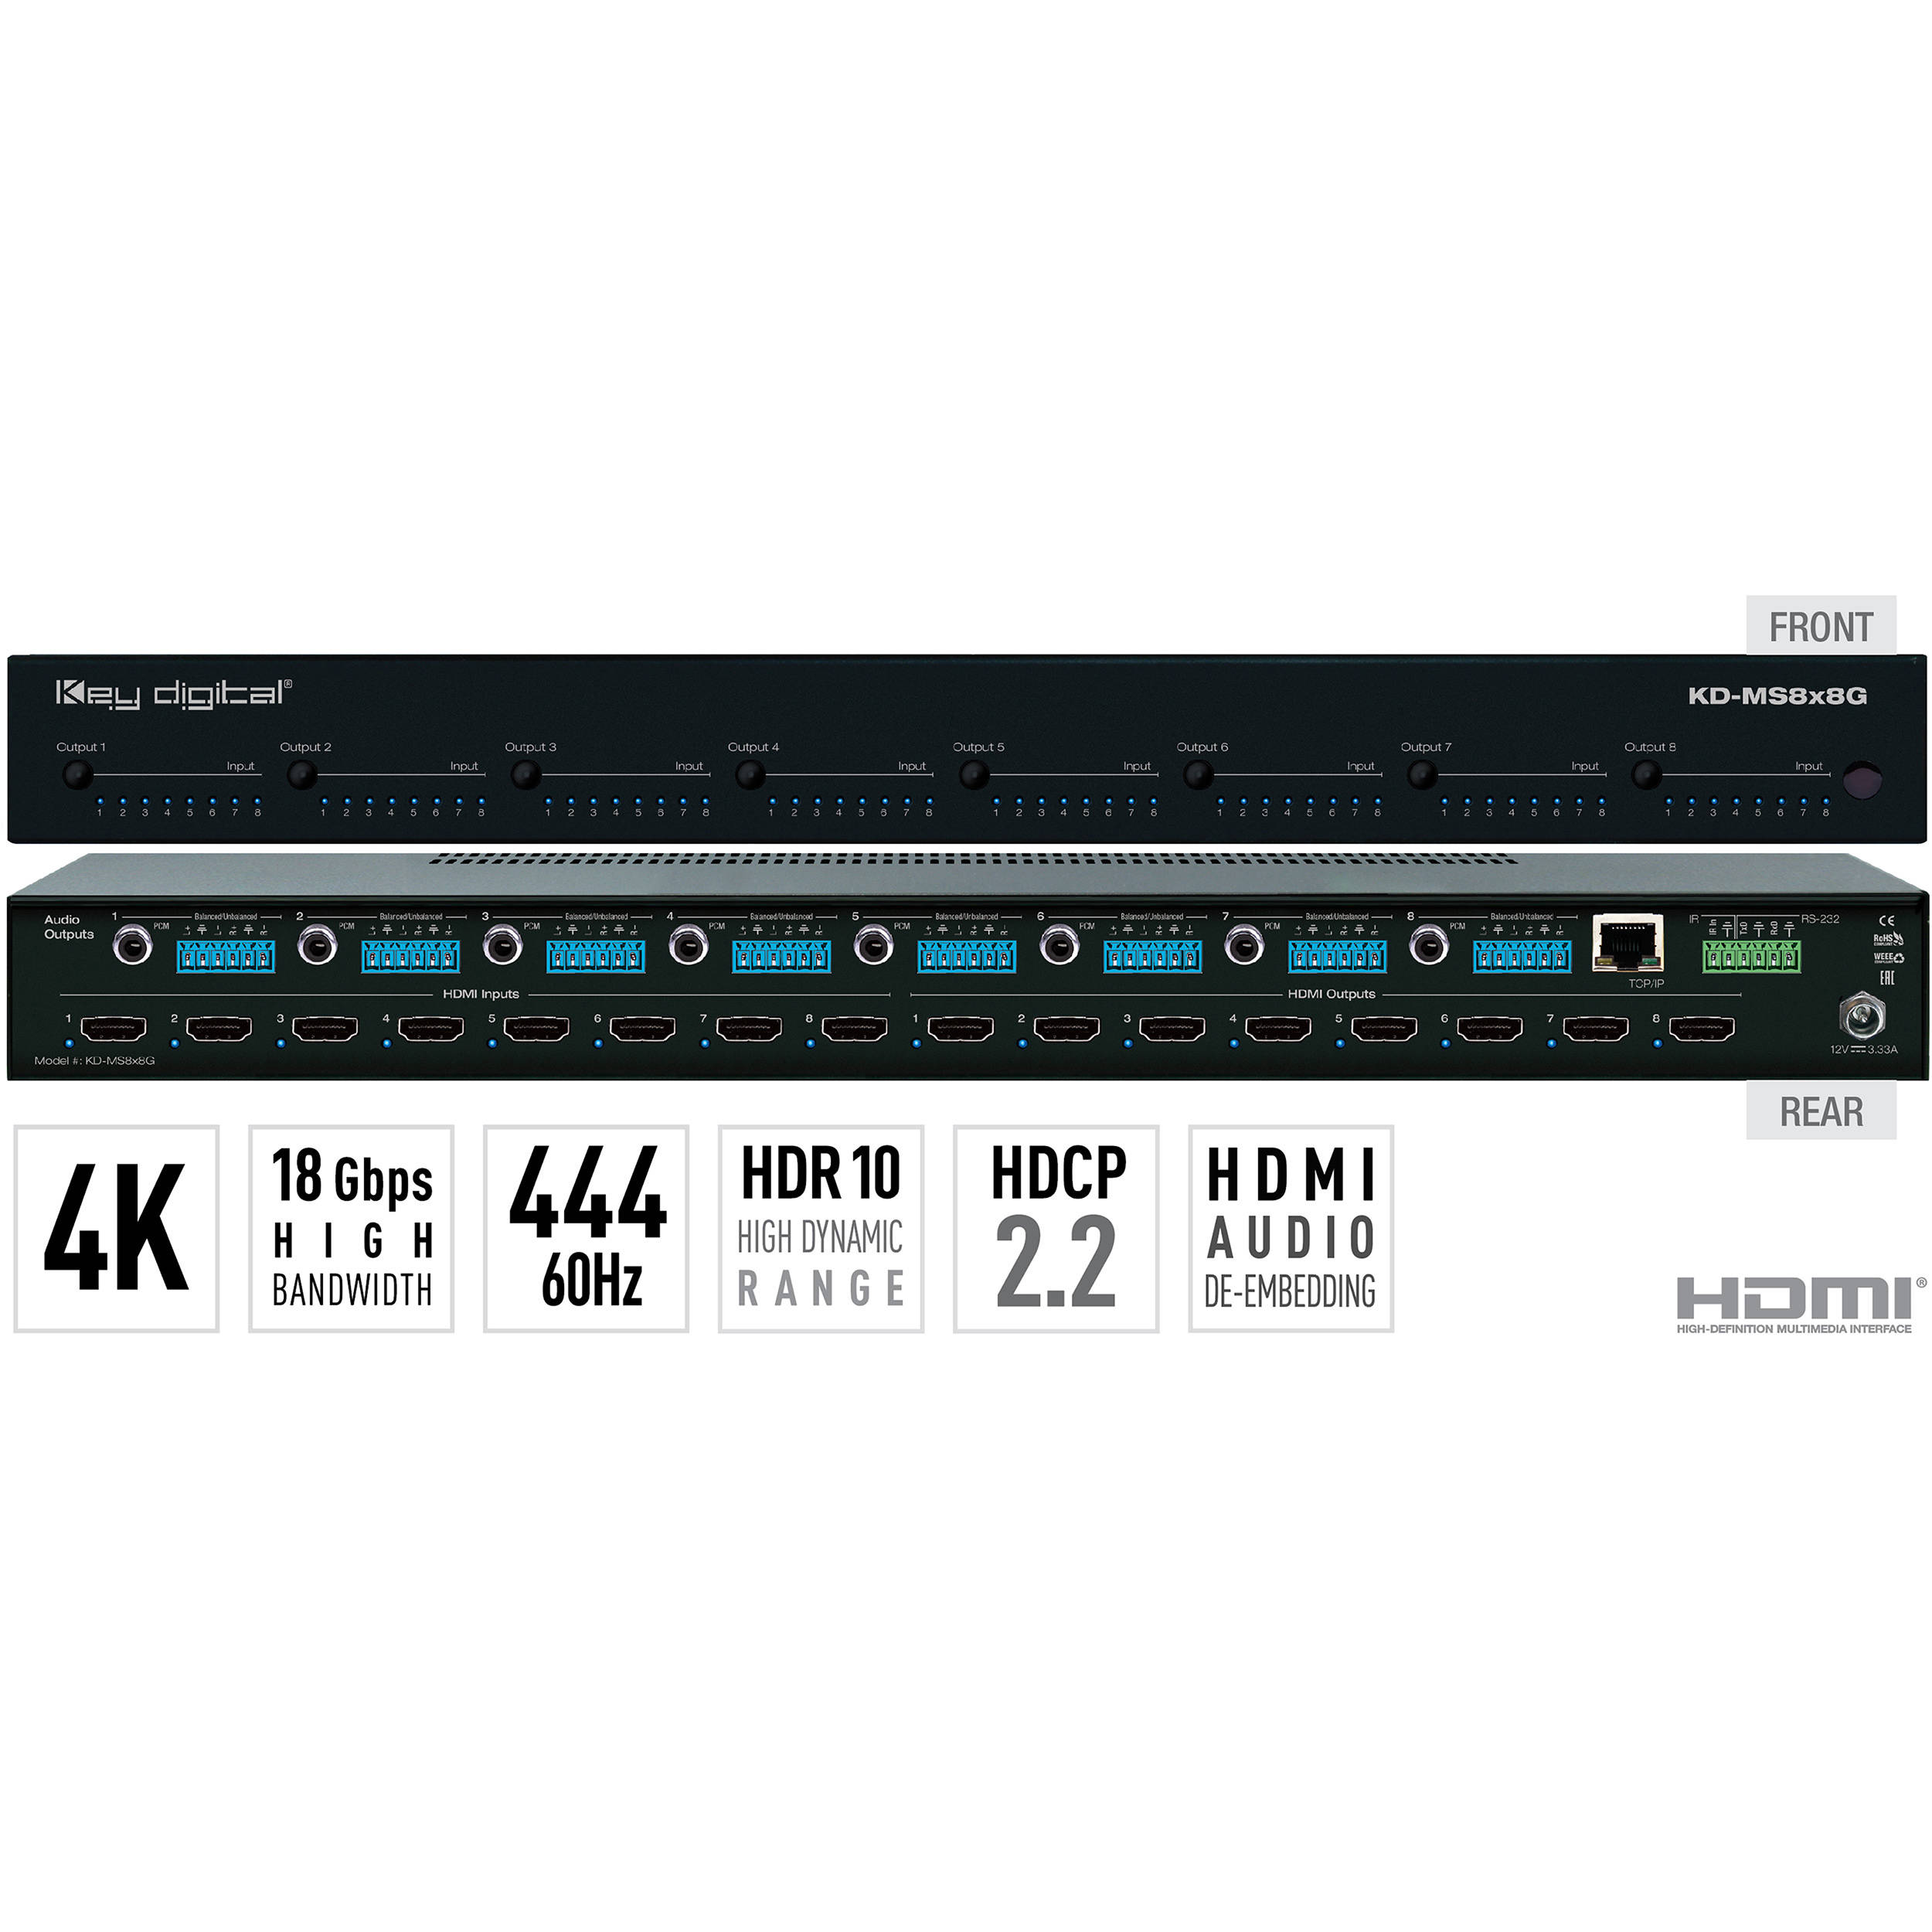 Key Digital 8x8 4K/18G HDMI Matrix Switcher